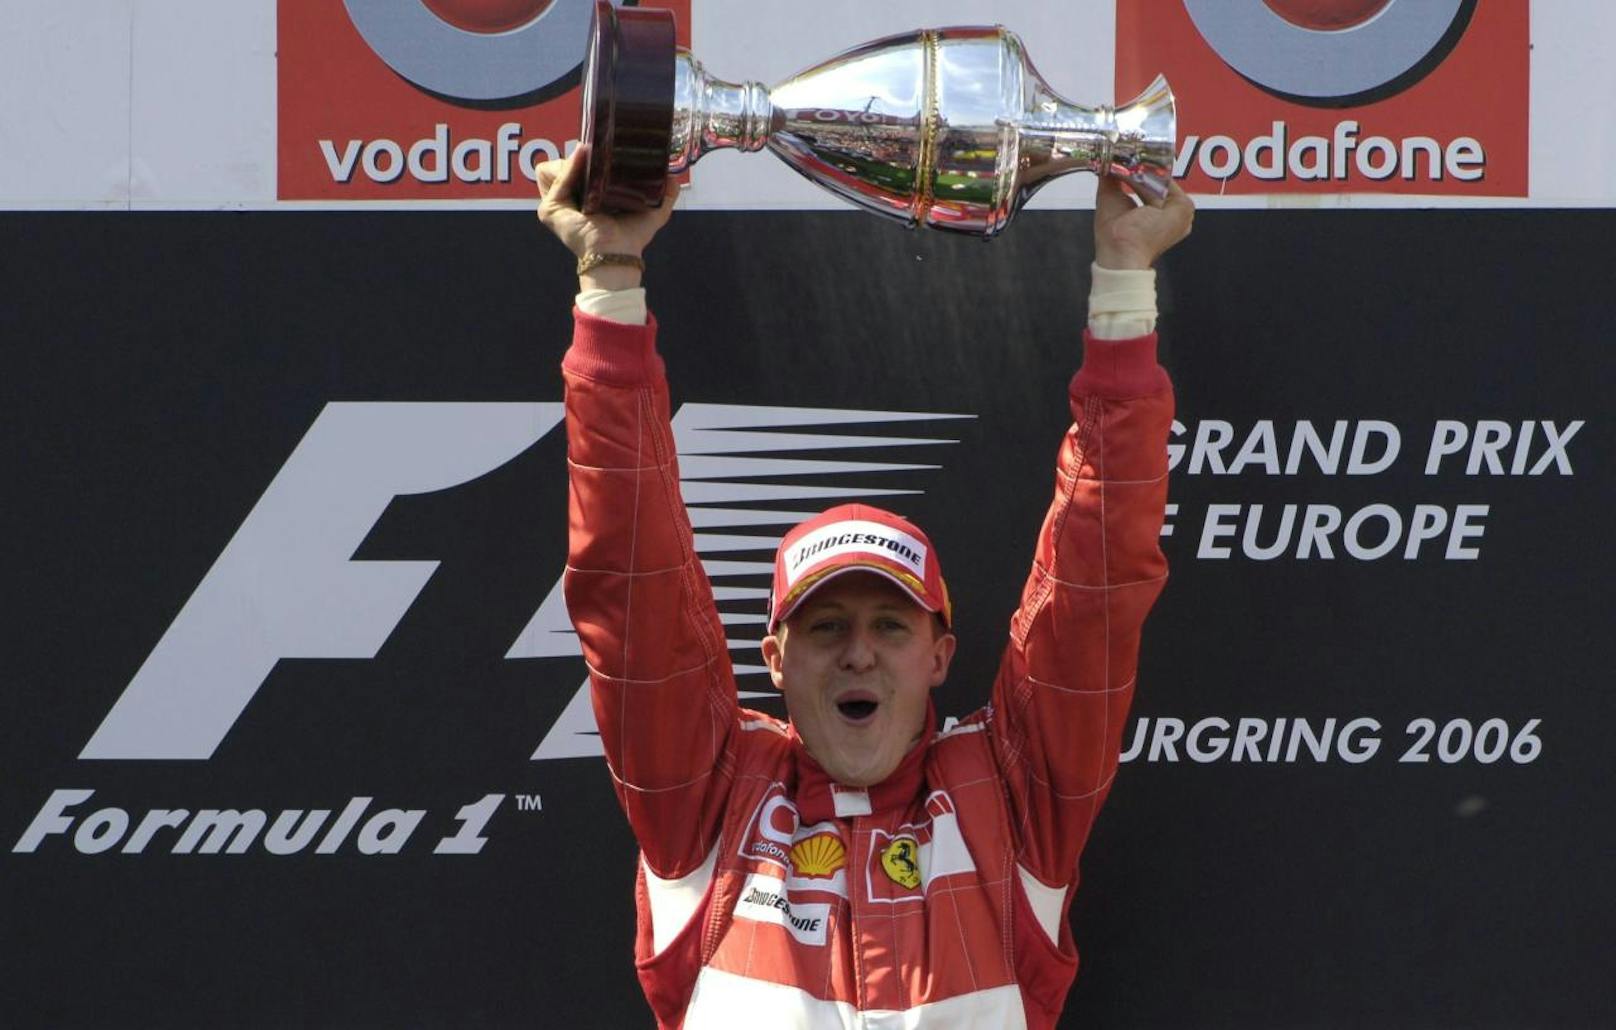 Platz 5: Michael Schumacher (Formel 1)
Verdienst: 1 Milliarde Dollar